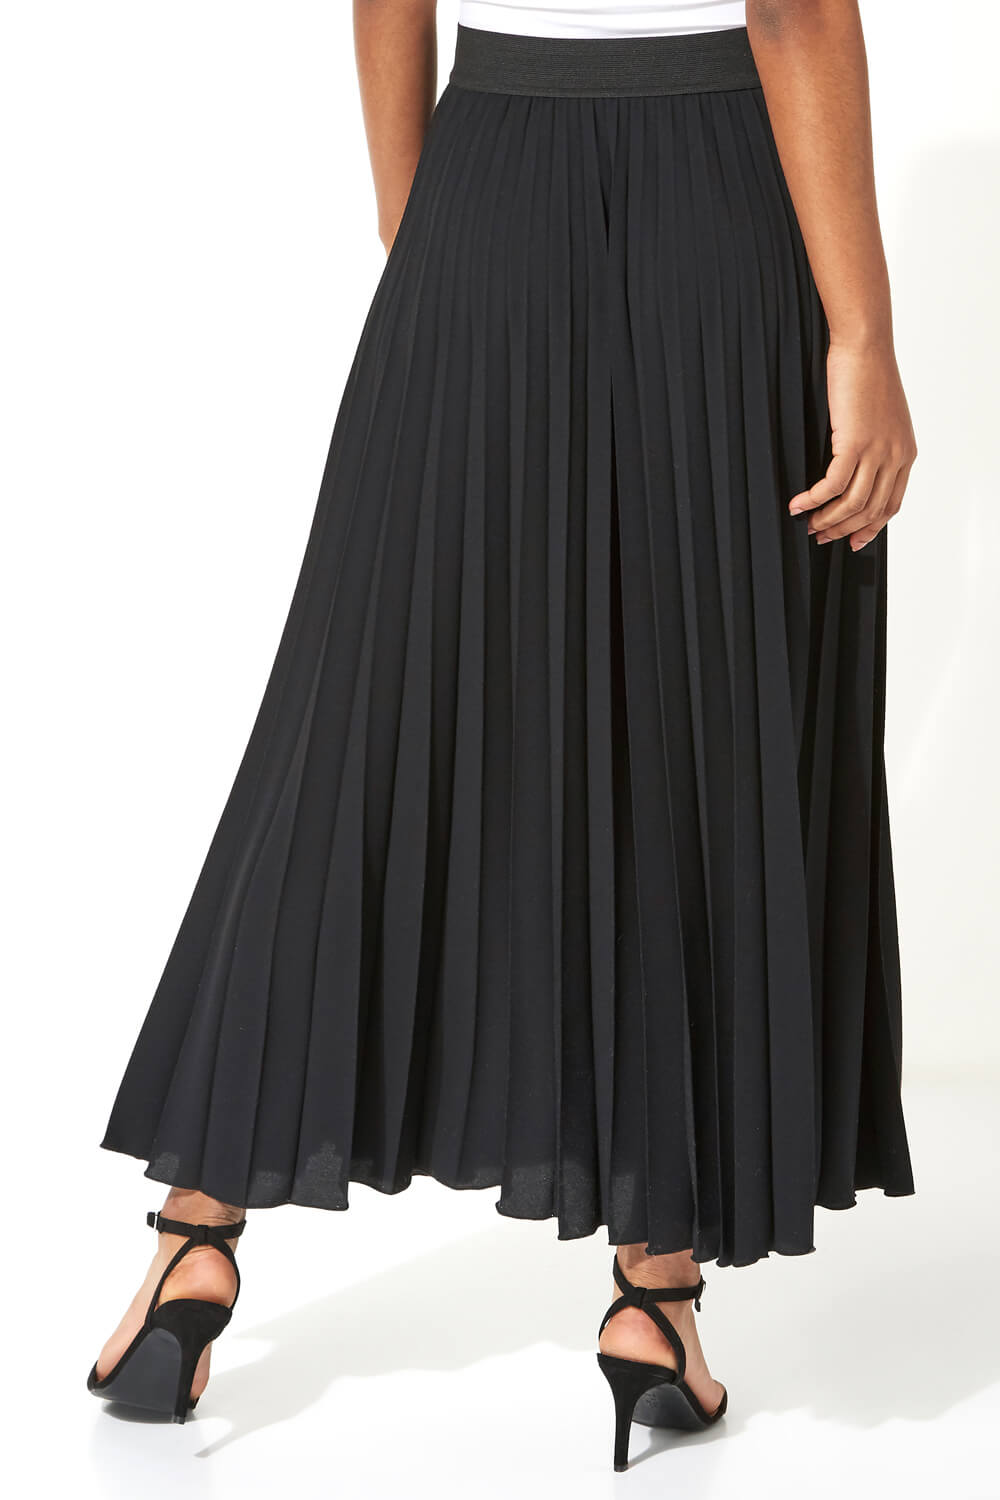 Black Pleated Maxi Skirt, Image 2 of 3